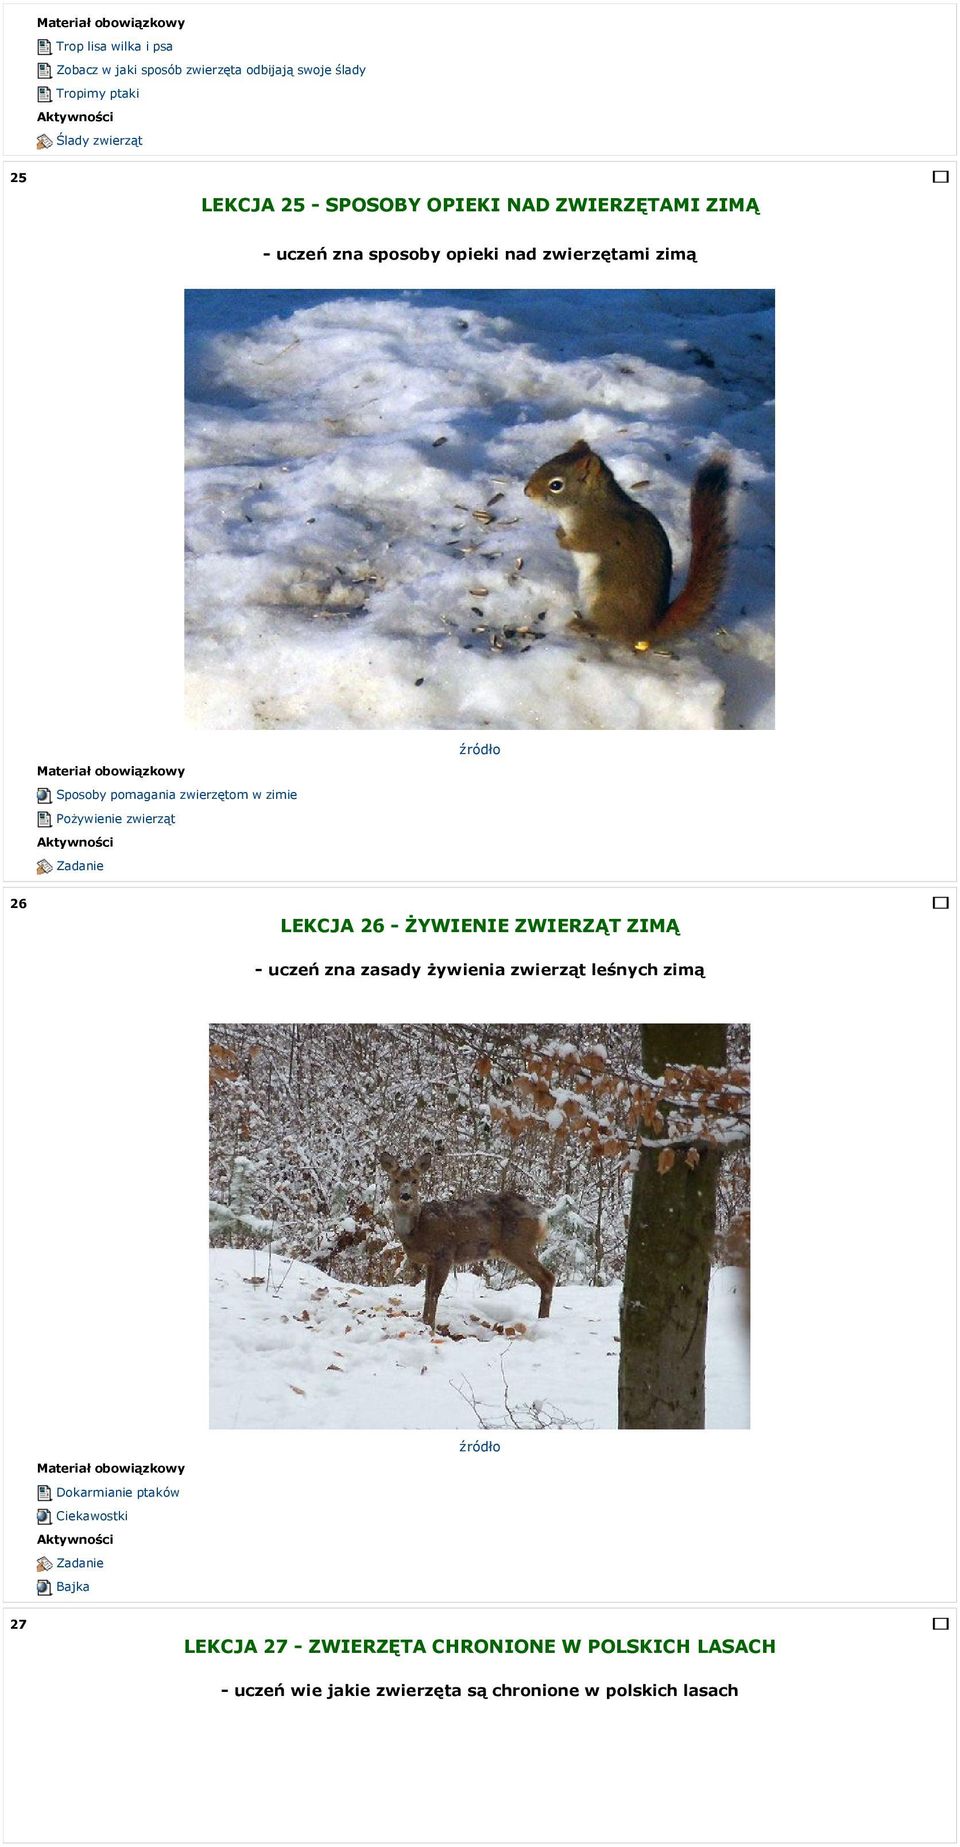 Pożywienie zwierząt 26 LEKCJA 26 - ŻYWIENIE ZWIERZĄT ZIMĄ - uczeń zna zasady żywienia zwierząt leśnych zimą Dokarmianie